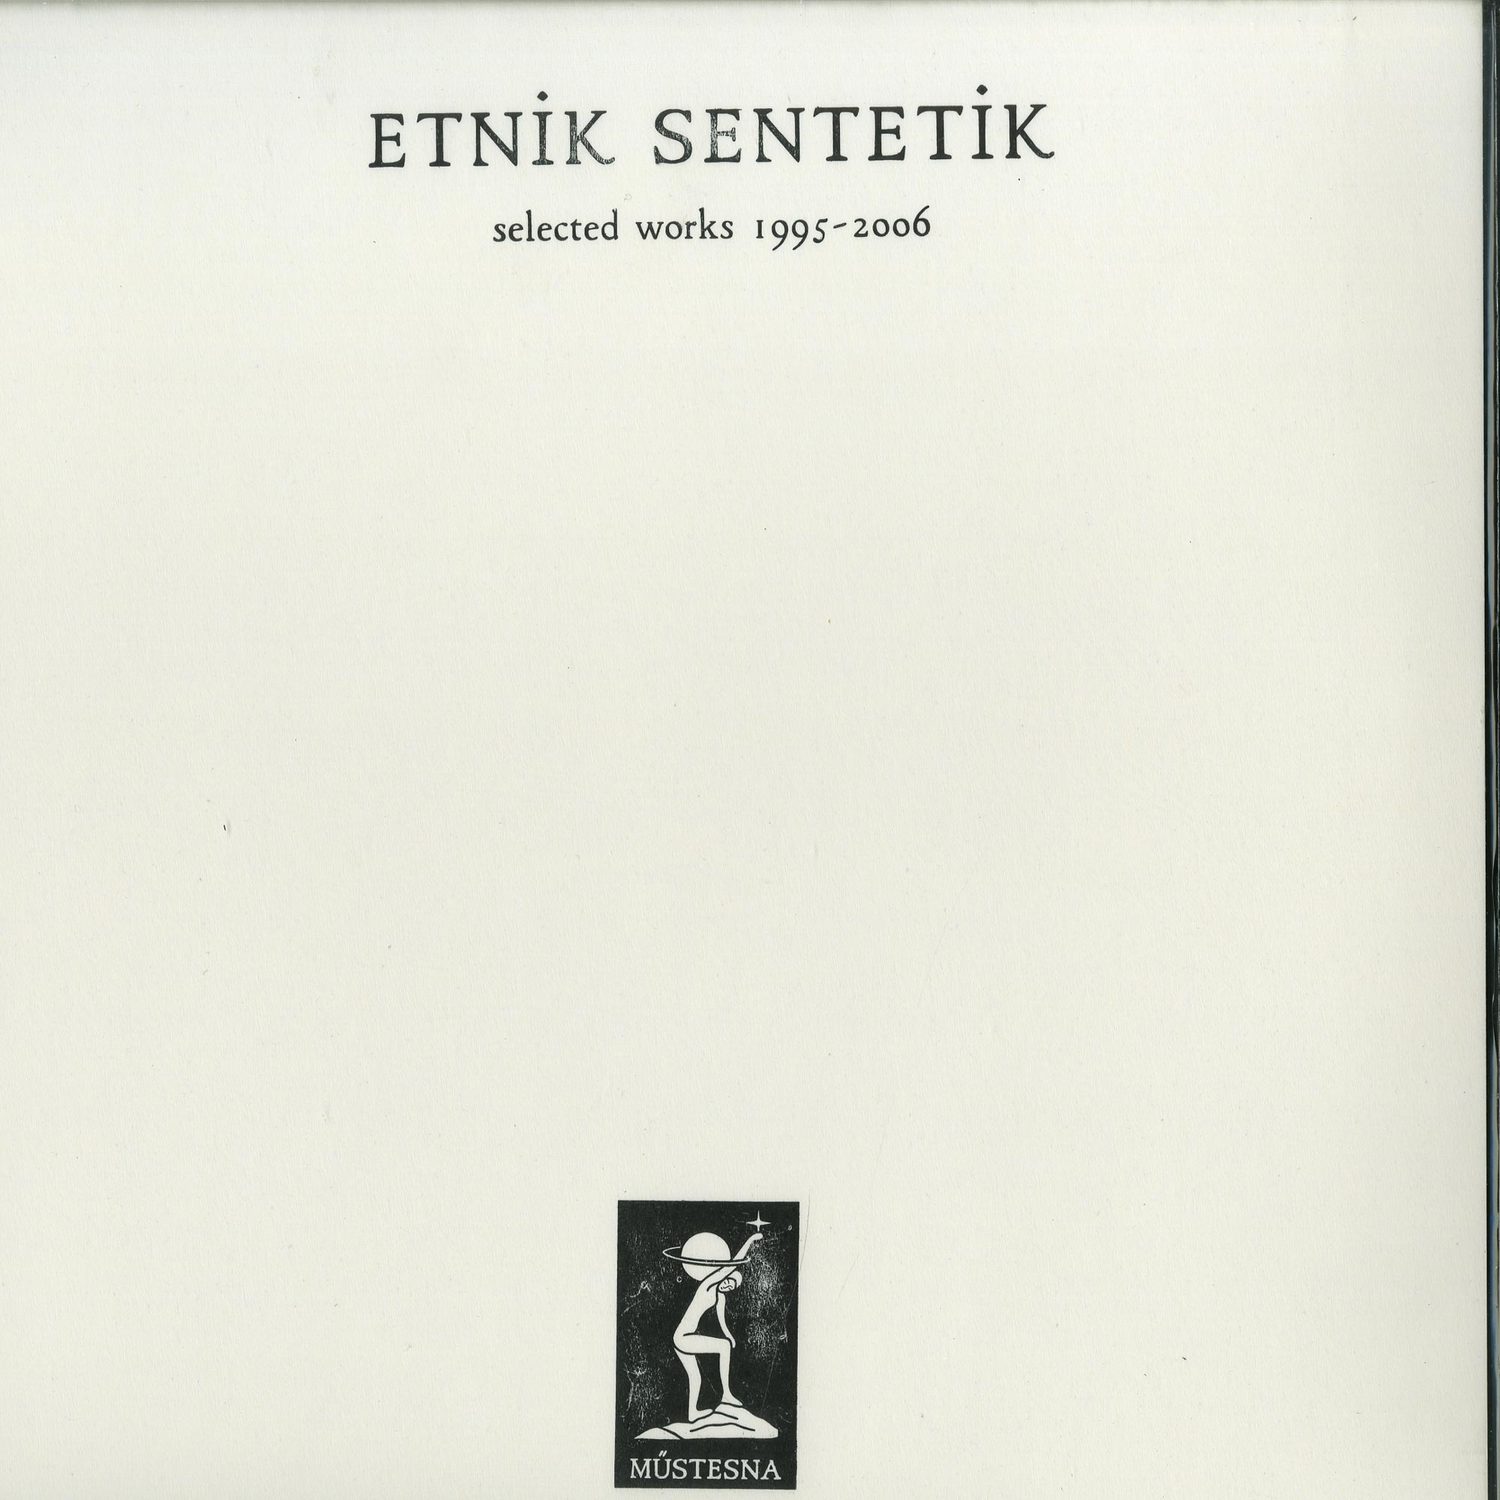 Etnik Sentetik - SELECTED WORKS 1995-2006 